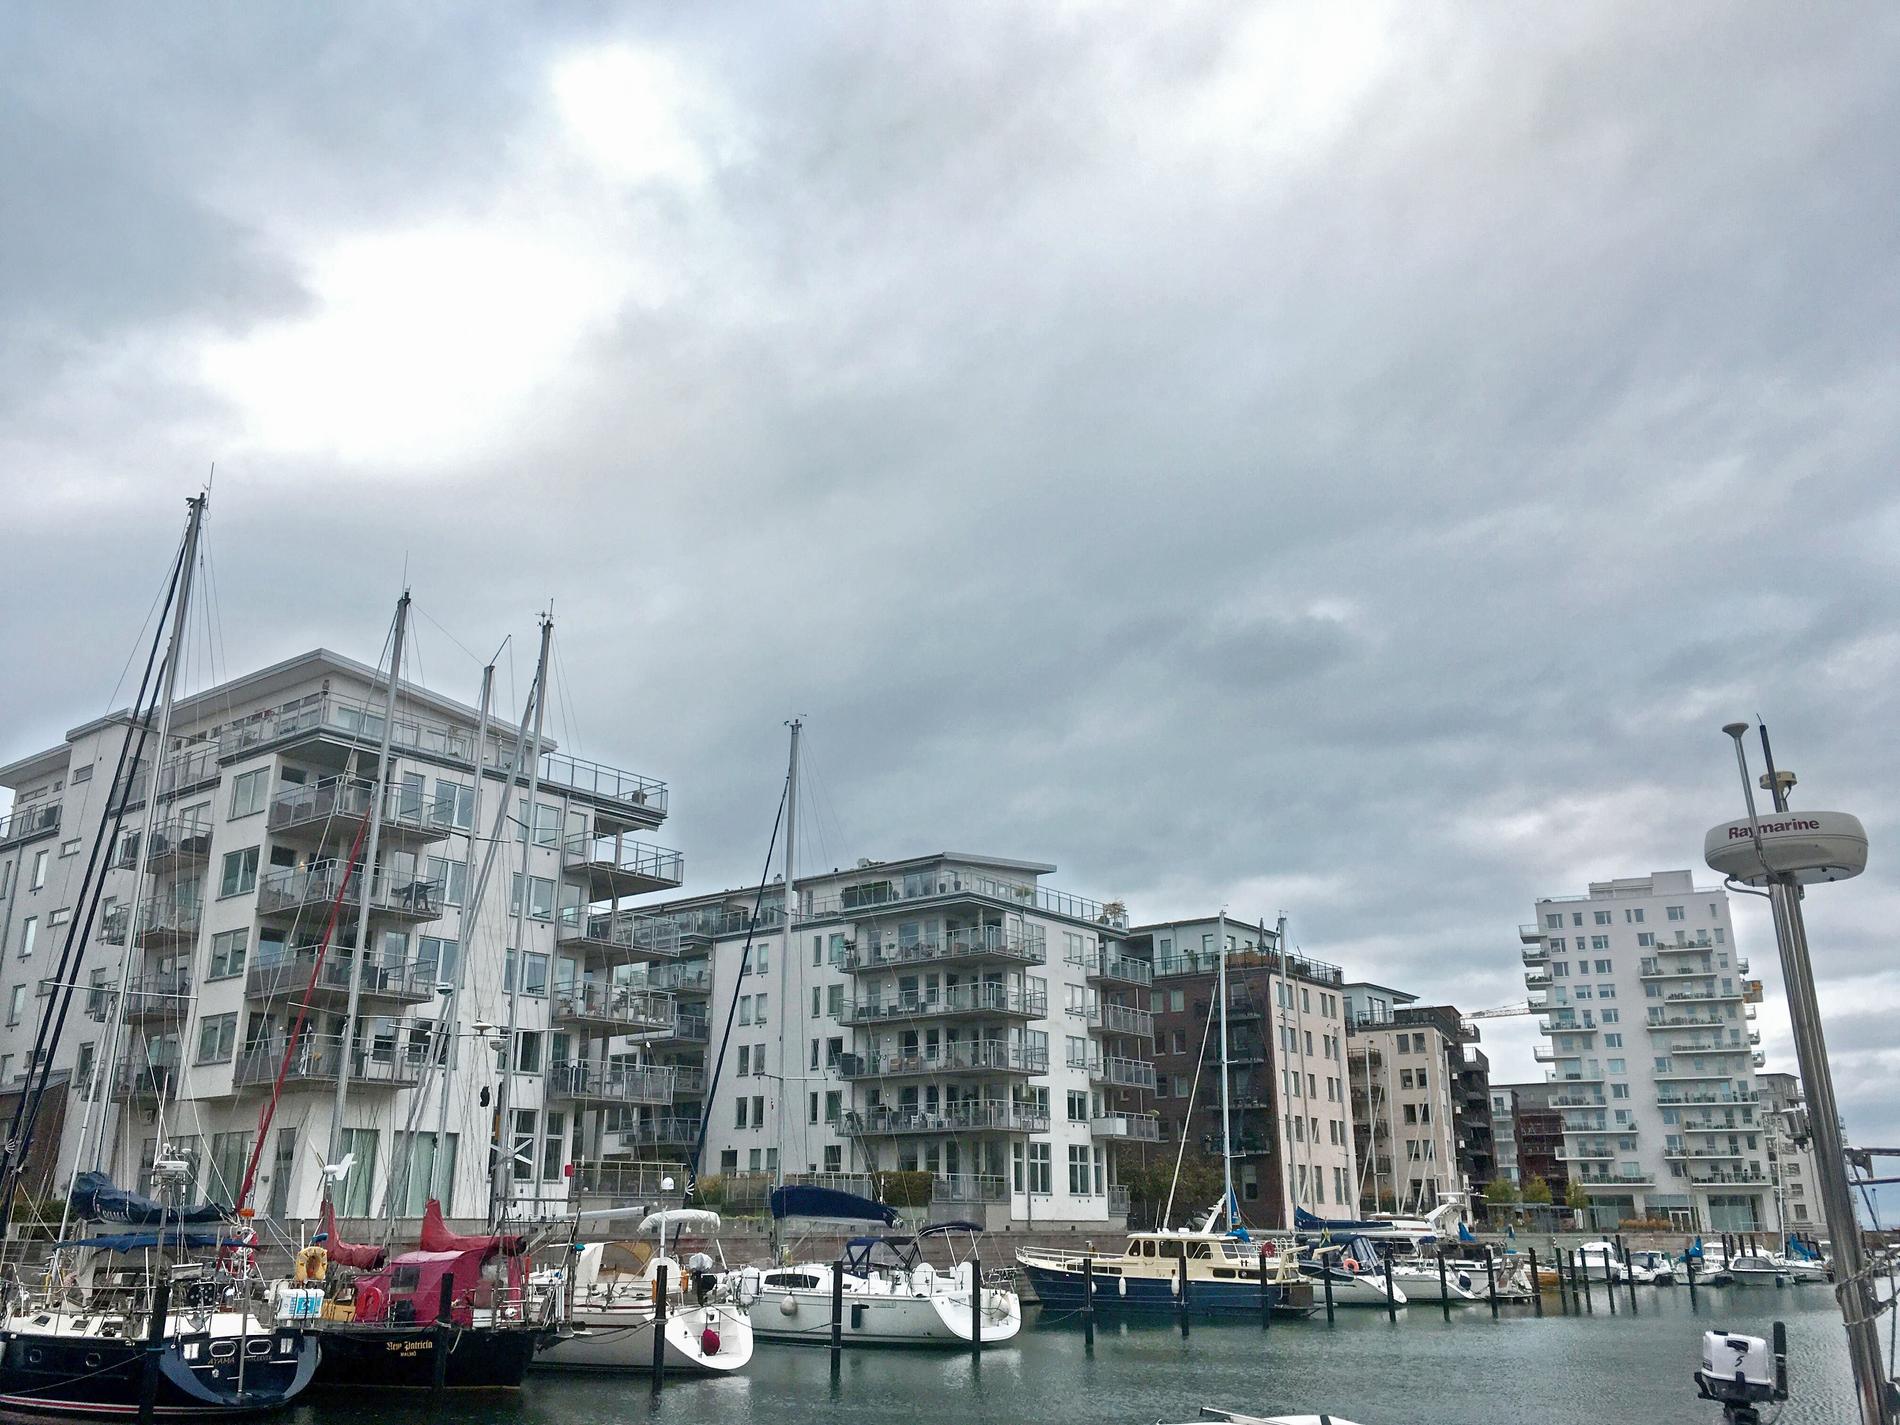 Dockan i Västra hamnen hör till Malmös dyraste område. Priserna för bostadsrätter i Malmö har aldrig varit högre än nu, visar nya siffror.